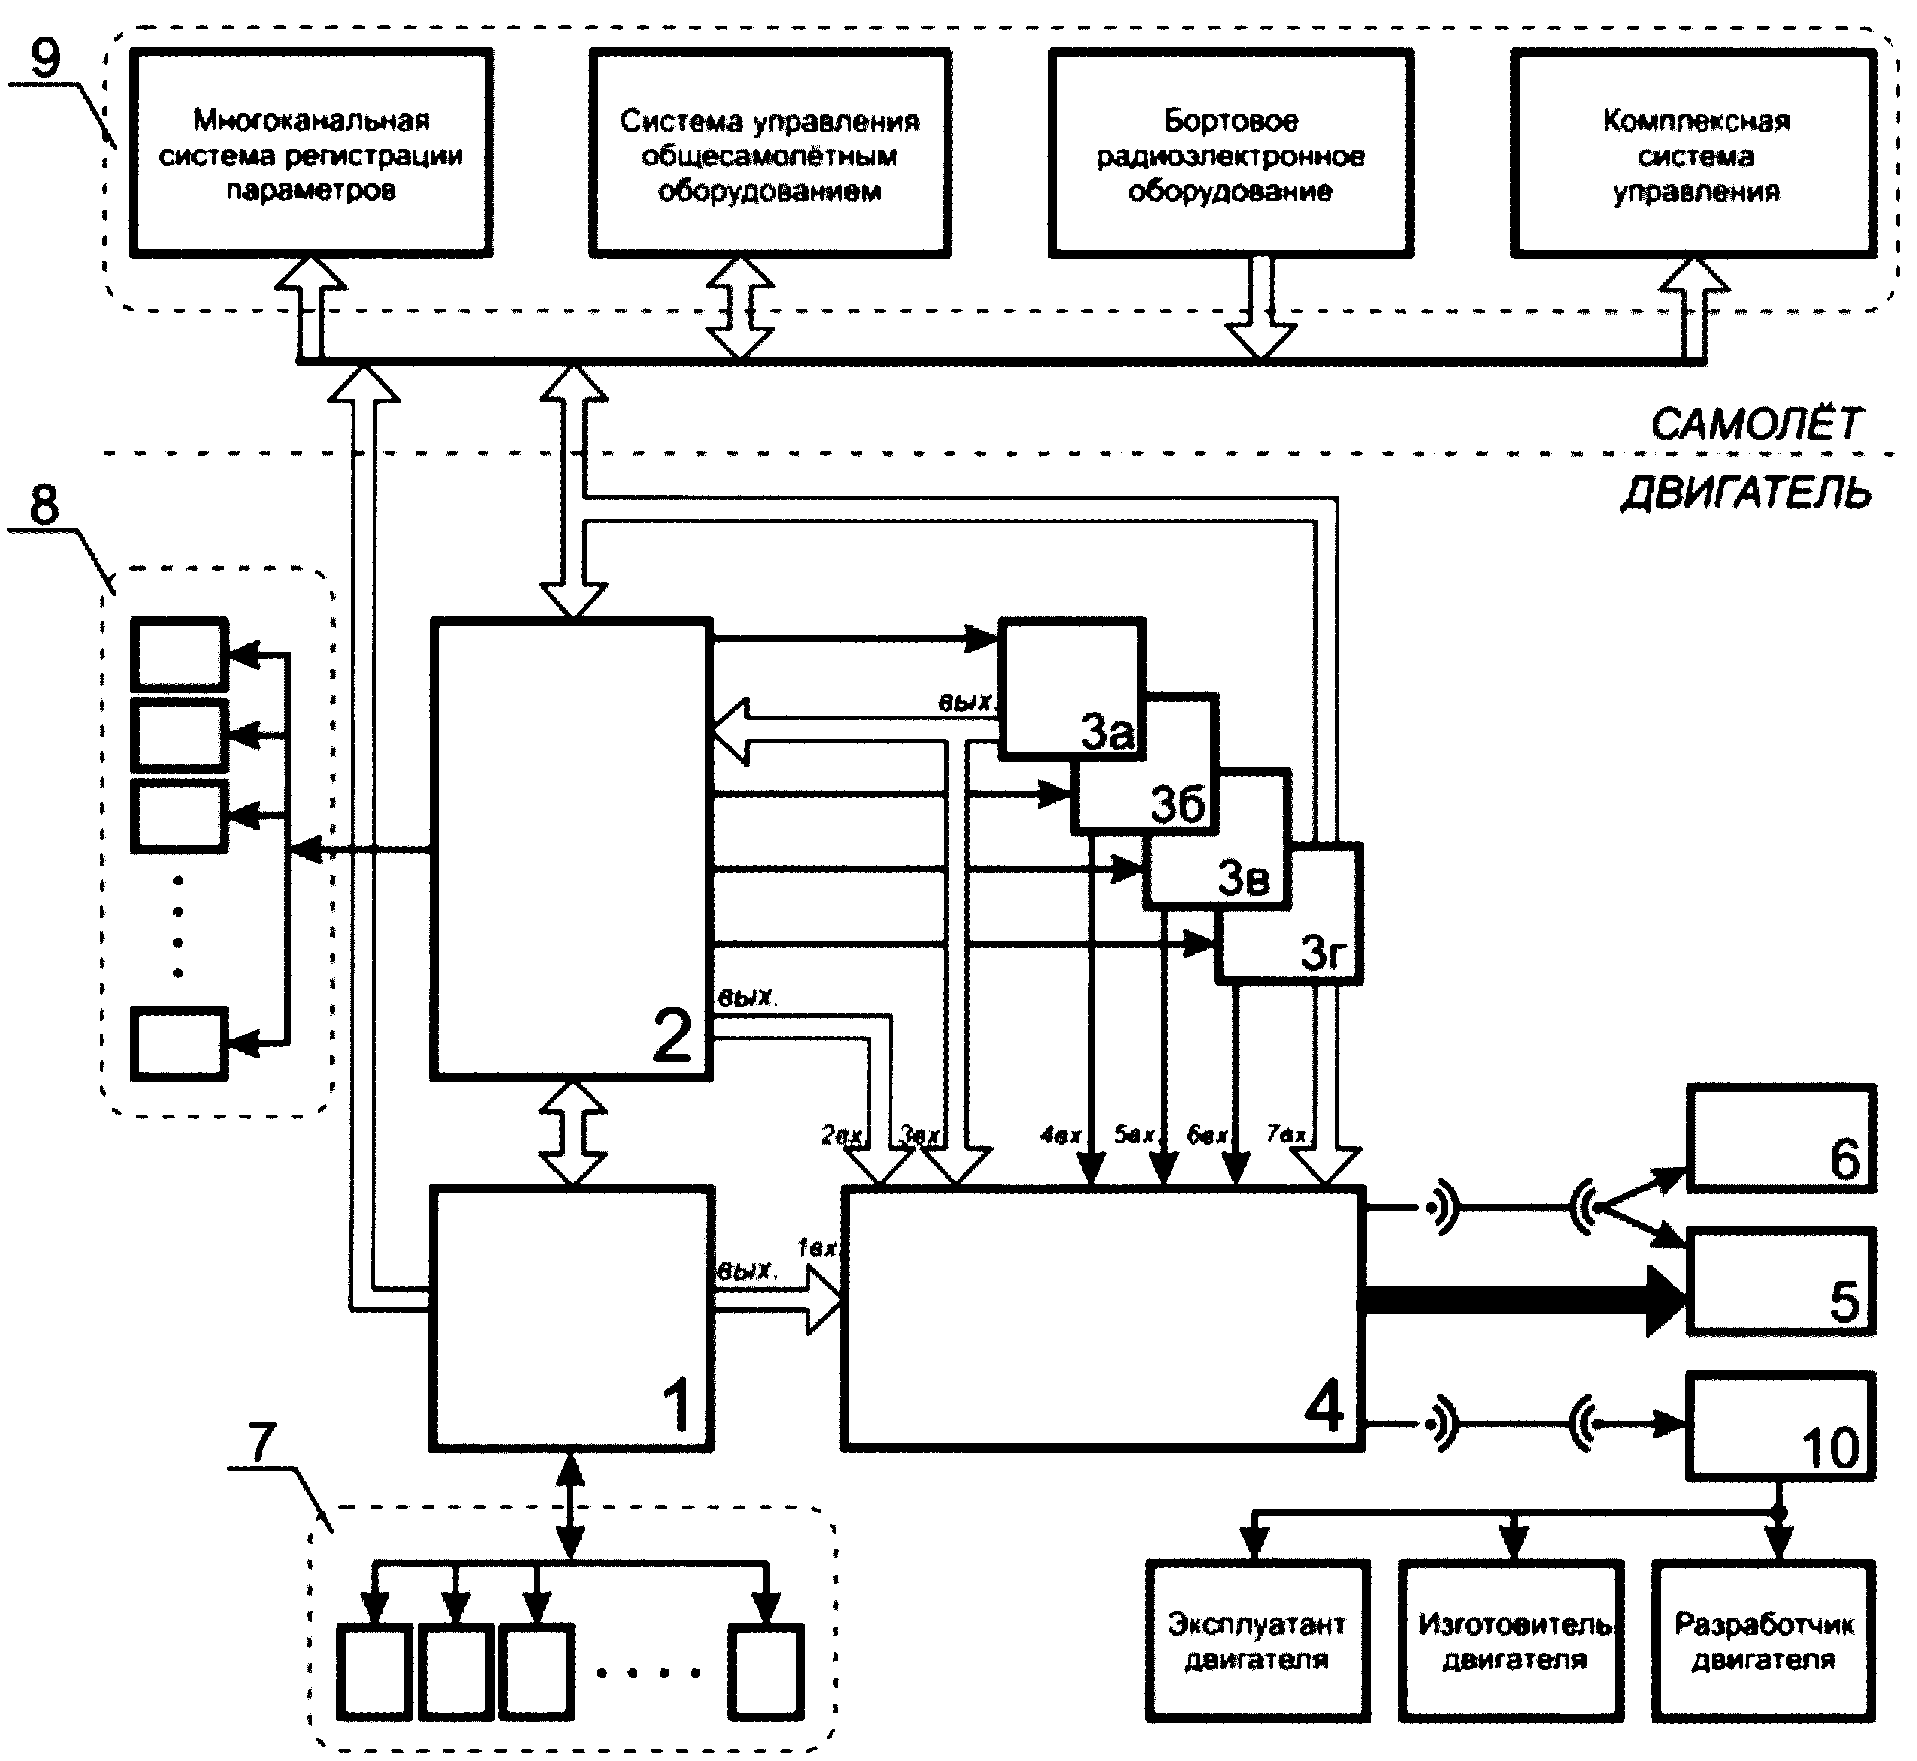 Автономное интегрированное устройство регистрации параметров авиационного газотурбинного двигателя